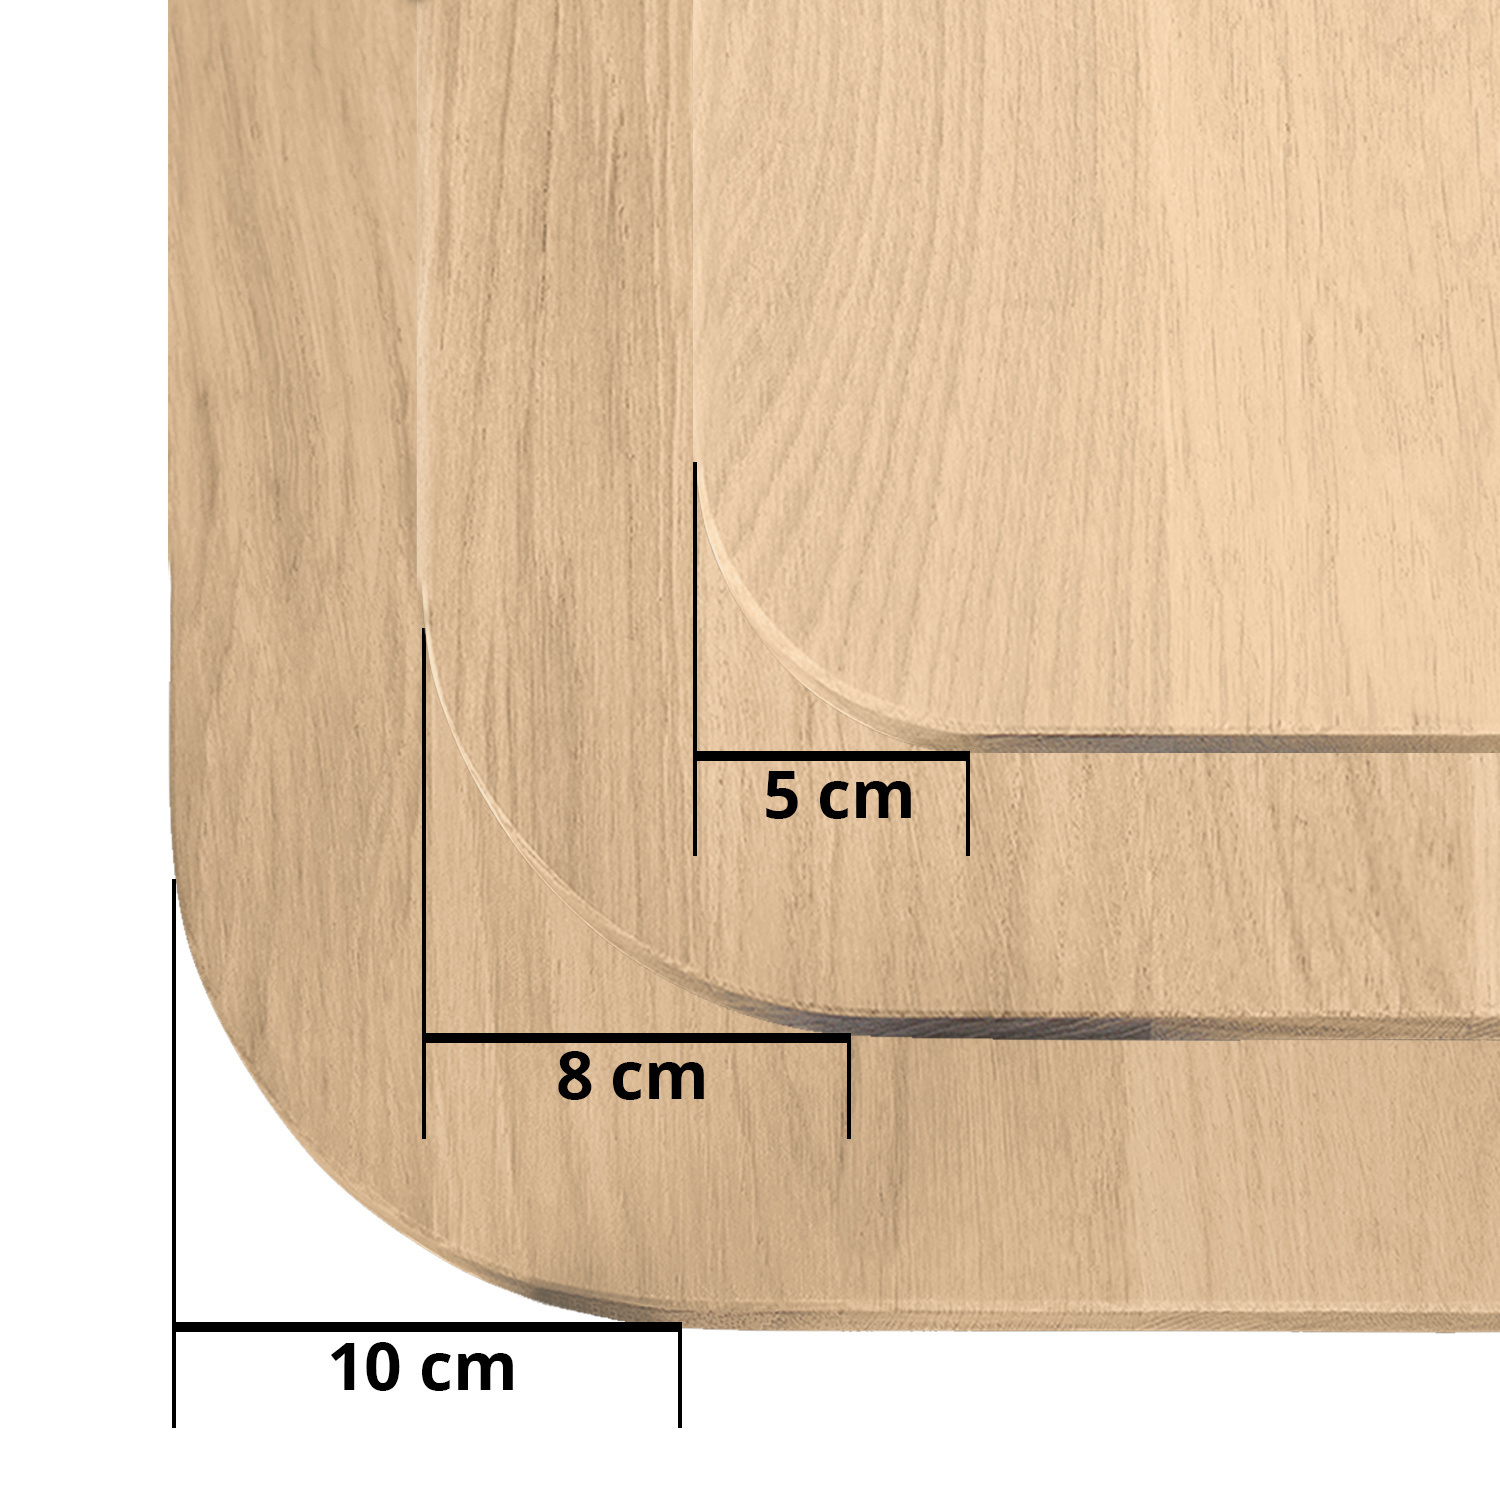  Tischplatte Eiche - mit runden Ecken - nach Maß - 2,5 cm dick (1-Schicht) - Breite Lamellen (14 - 20 cm breit) - Eichenholz rustikal - verleimt & künstlich getrocknet (HF 8-12%)  - mit abgerundeten Kanten - 40-117x80-250 cm